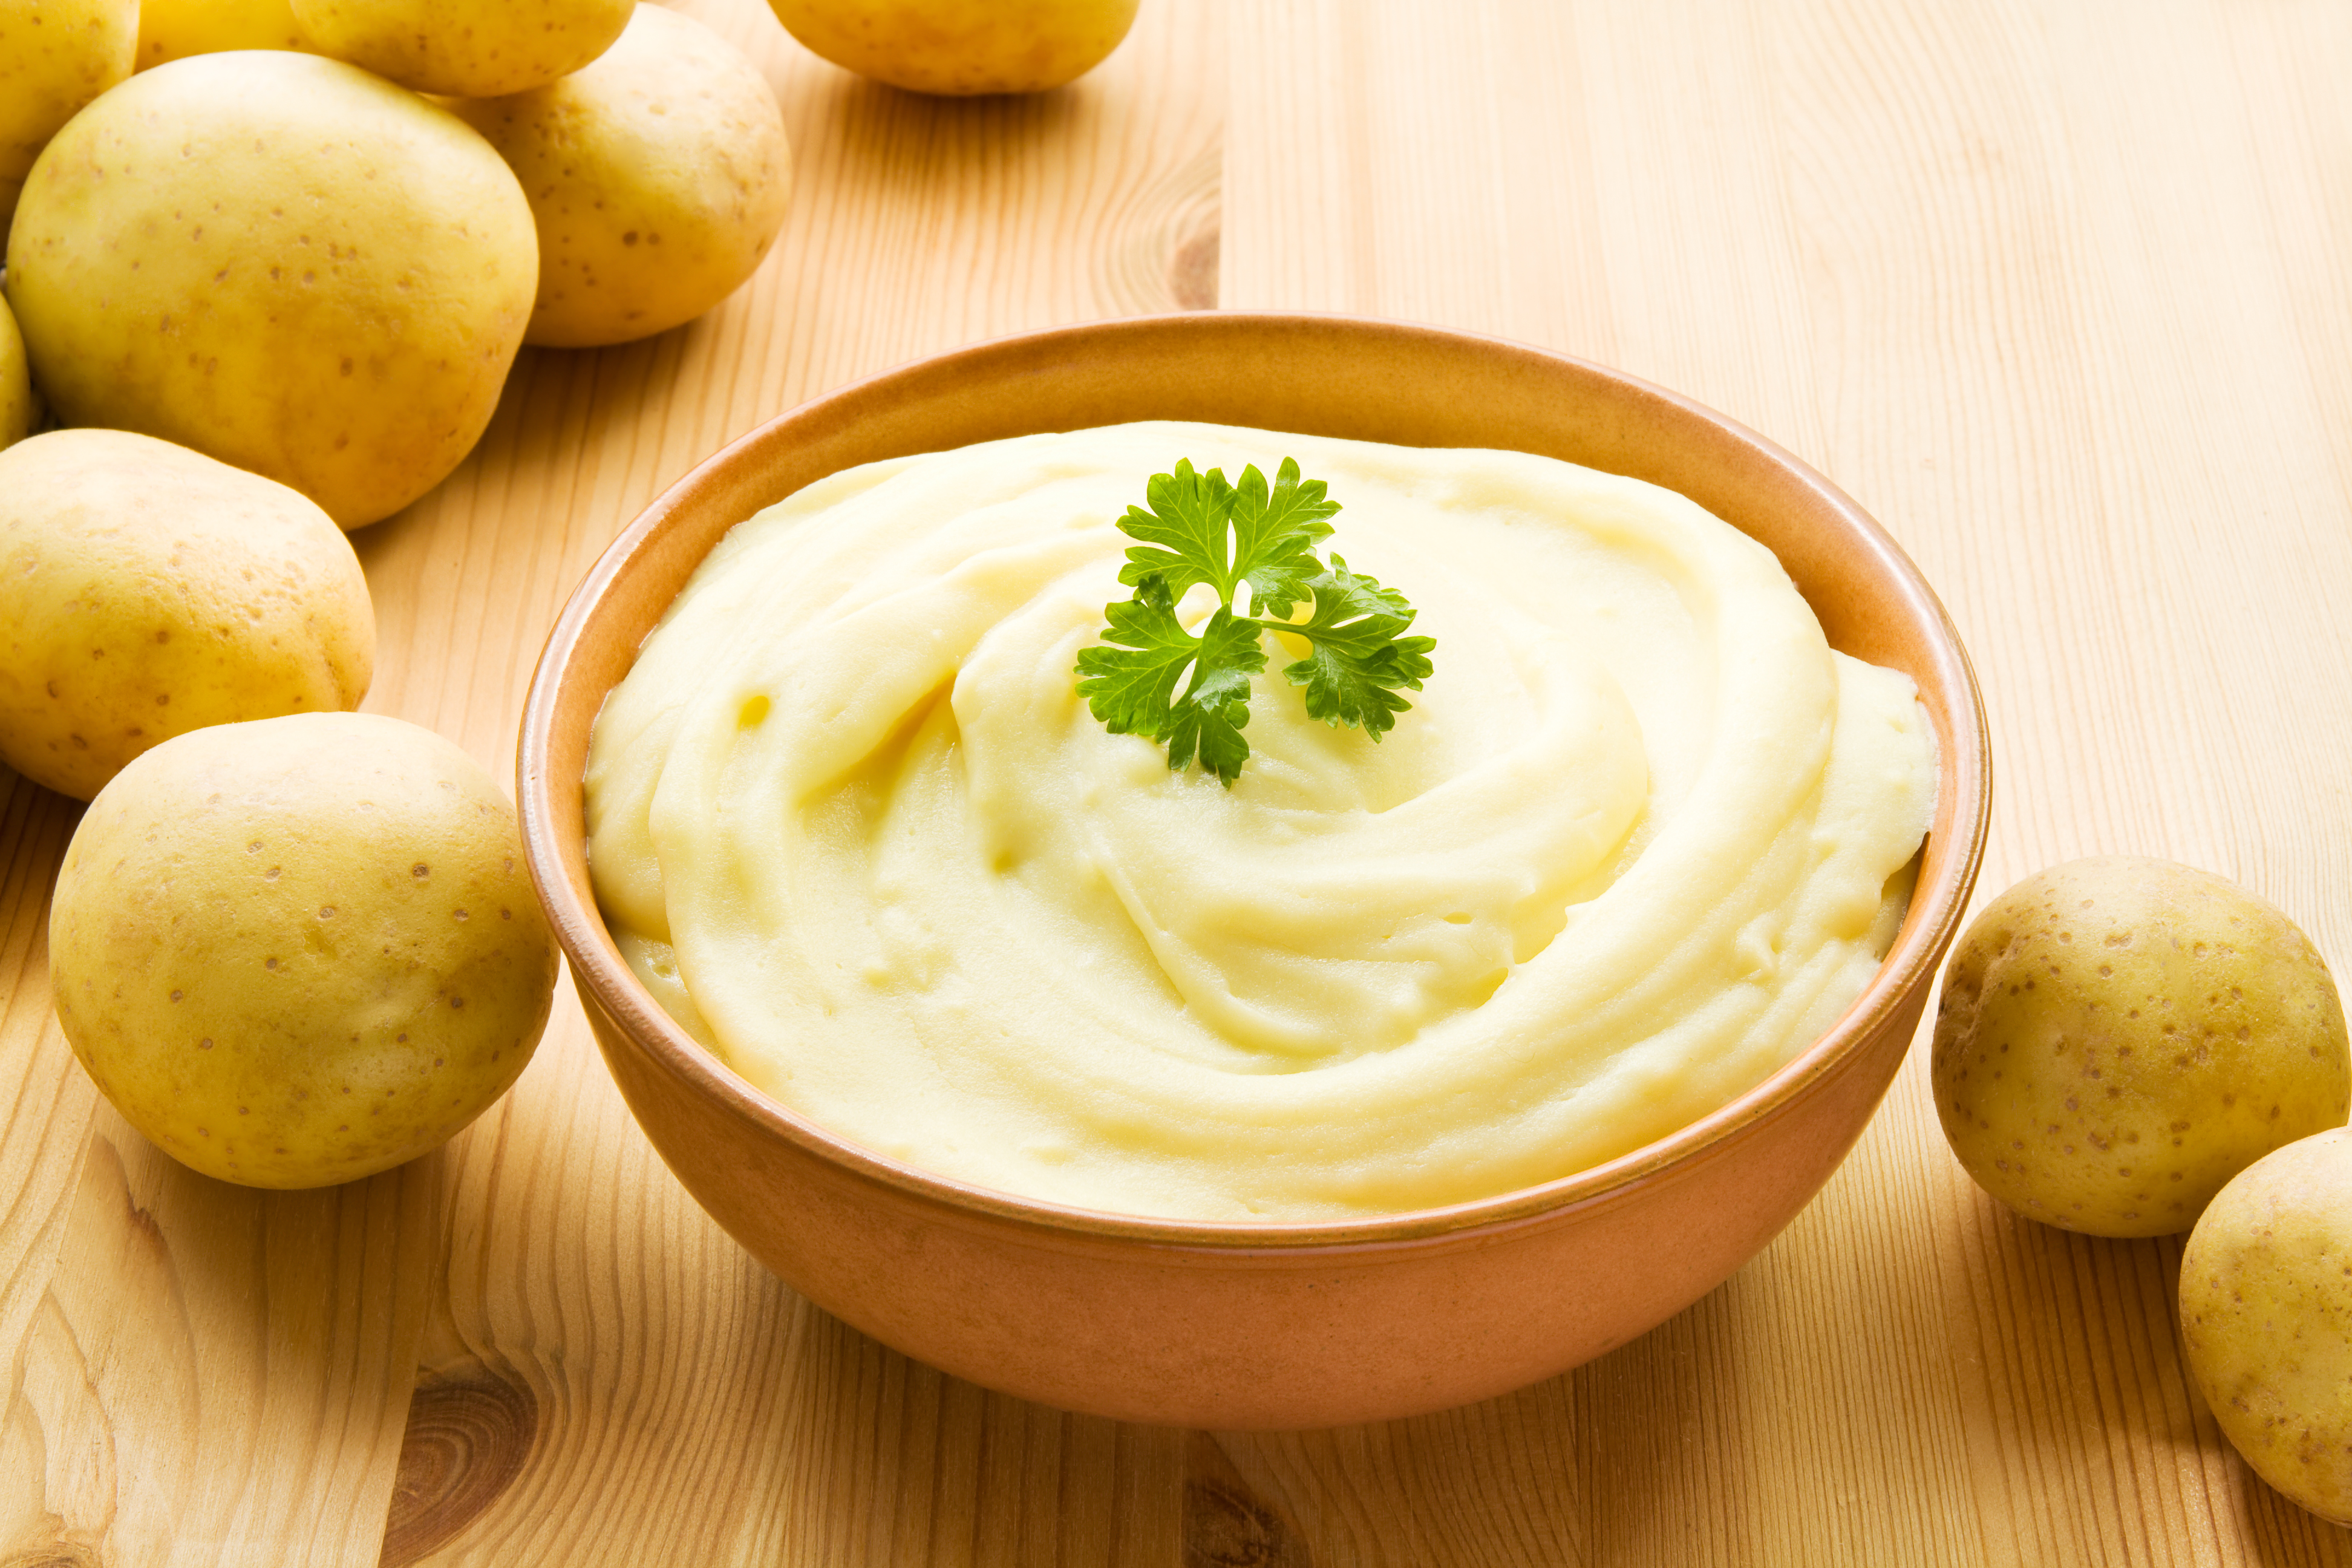 Cuál es la mejor receta de puré de patatas?, Recetas, Gastronomía